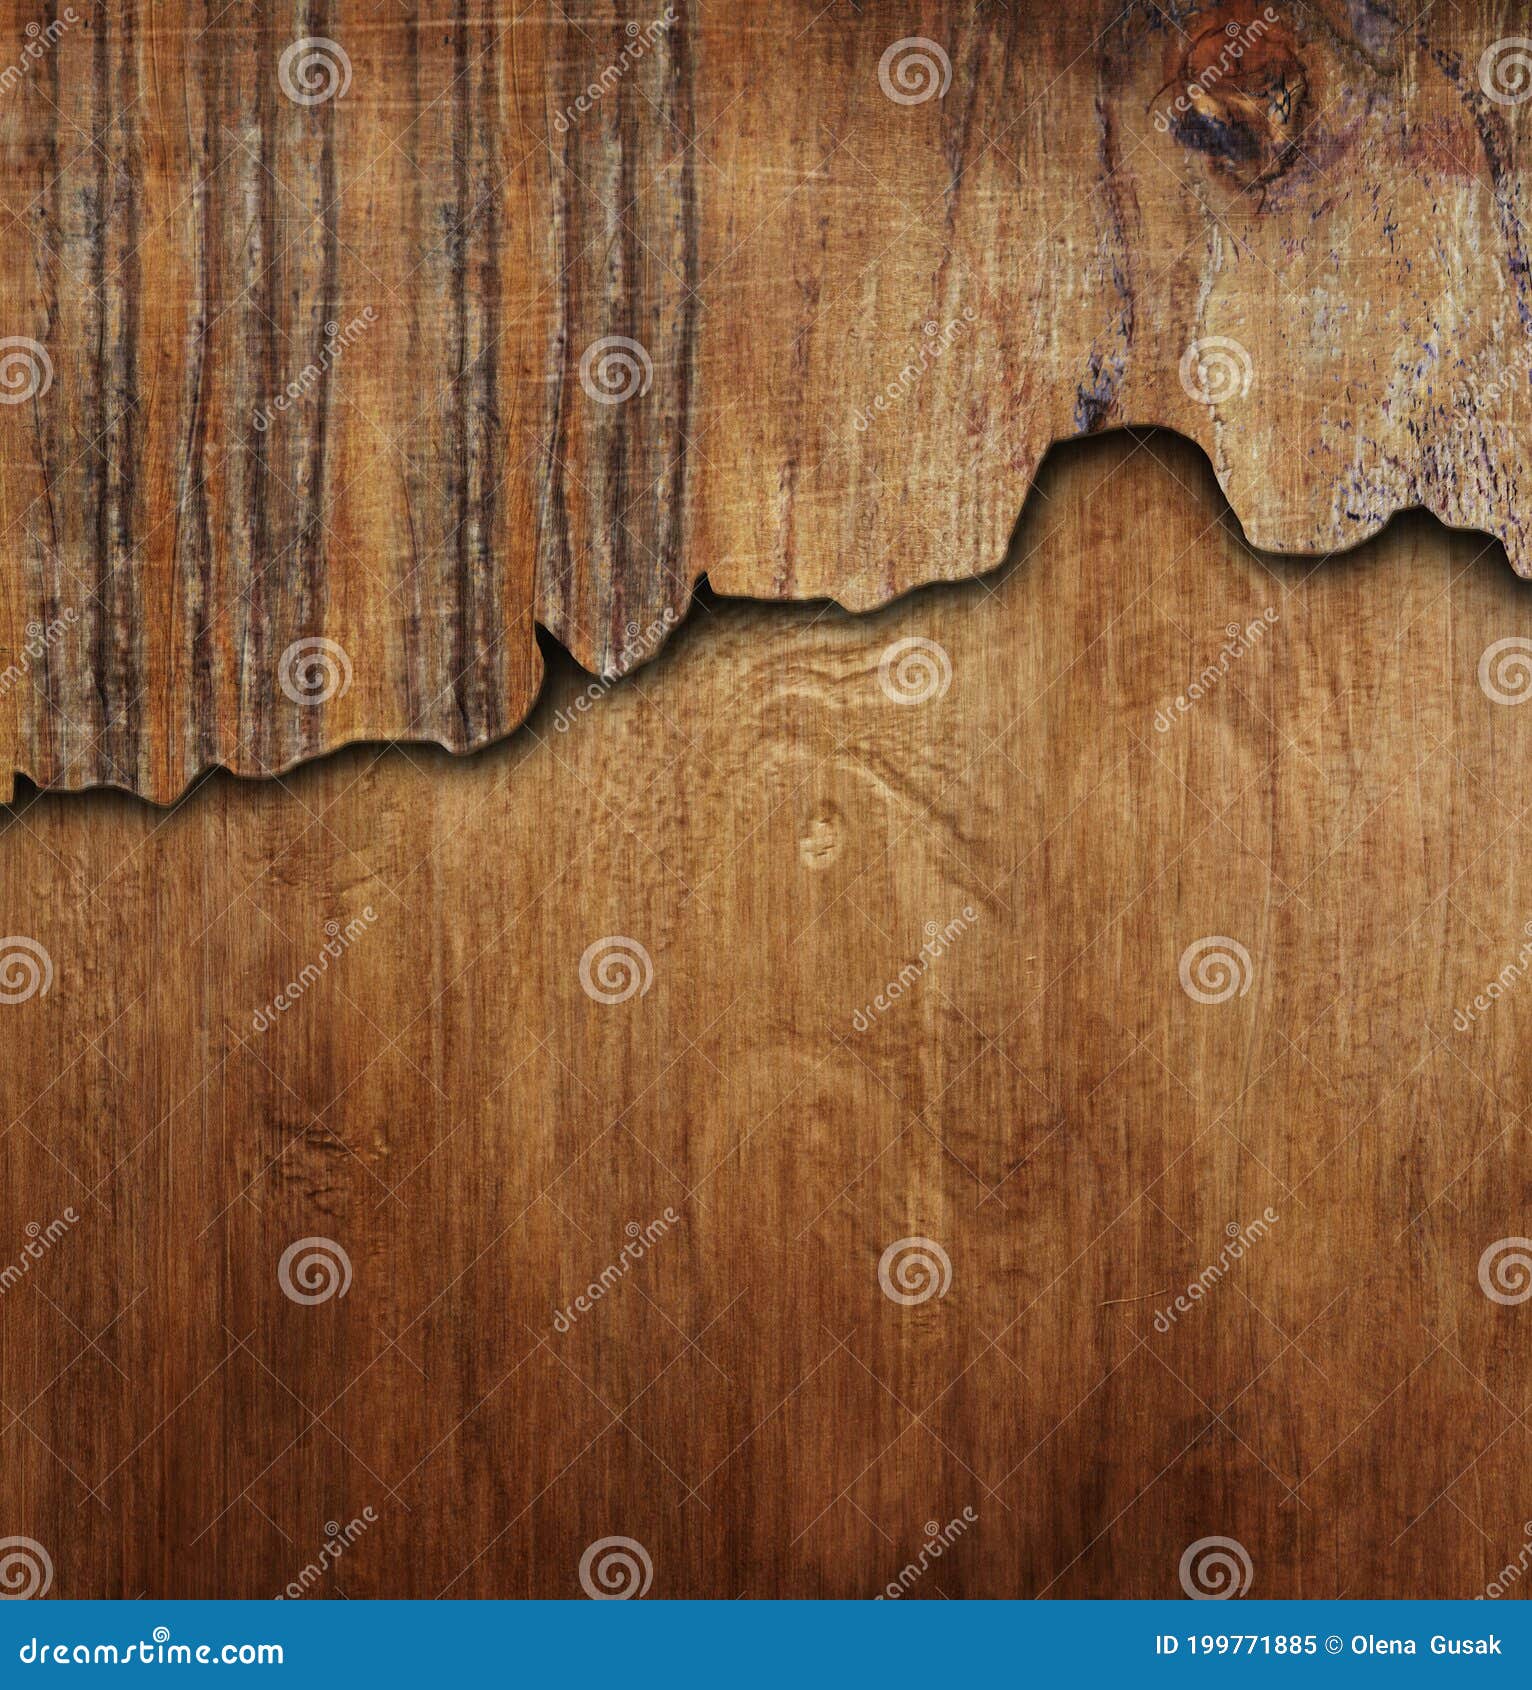 Với tầm nhìn từ trên xuống, nền gỗ vân nứt sẽ khiến bất kỳ ai cũng phải say mê. Hình ảnh nền gỗ vân nứt này mang lại sự tự nhiên và độc đáo cho không gian. Bạn sẽ không thể biểu tượng hóa được đẹp tuyệt vời này, nếu không vào xem hình ngay.